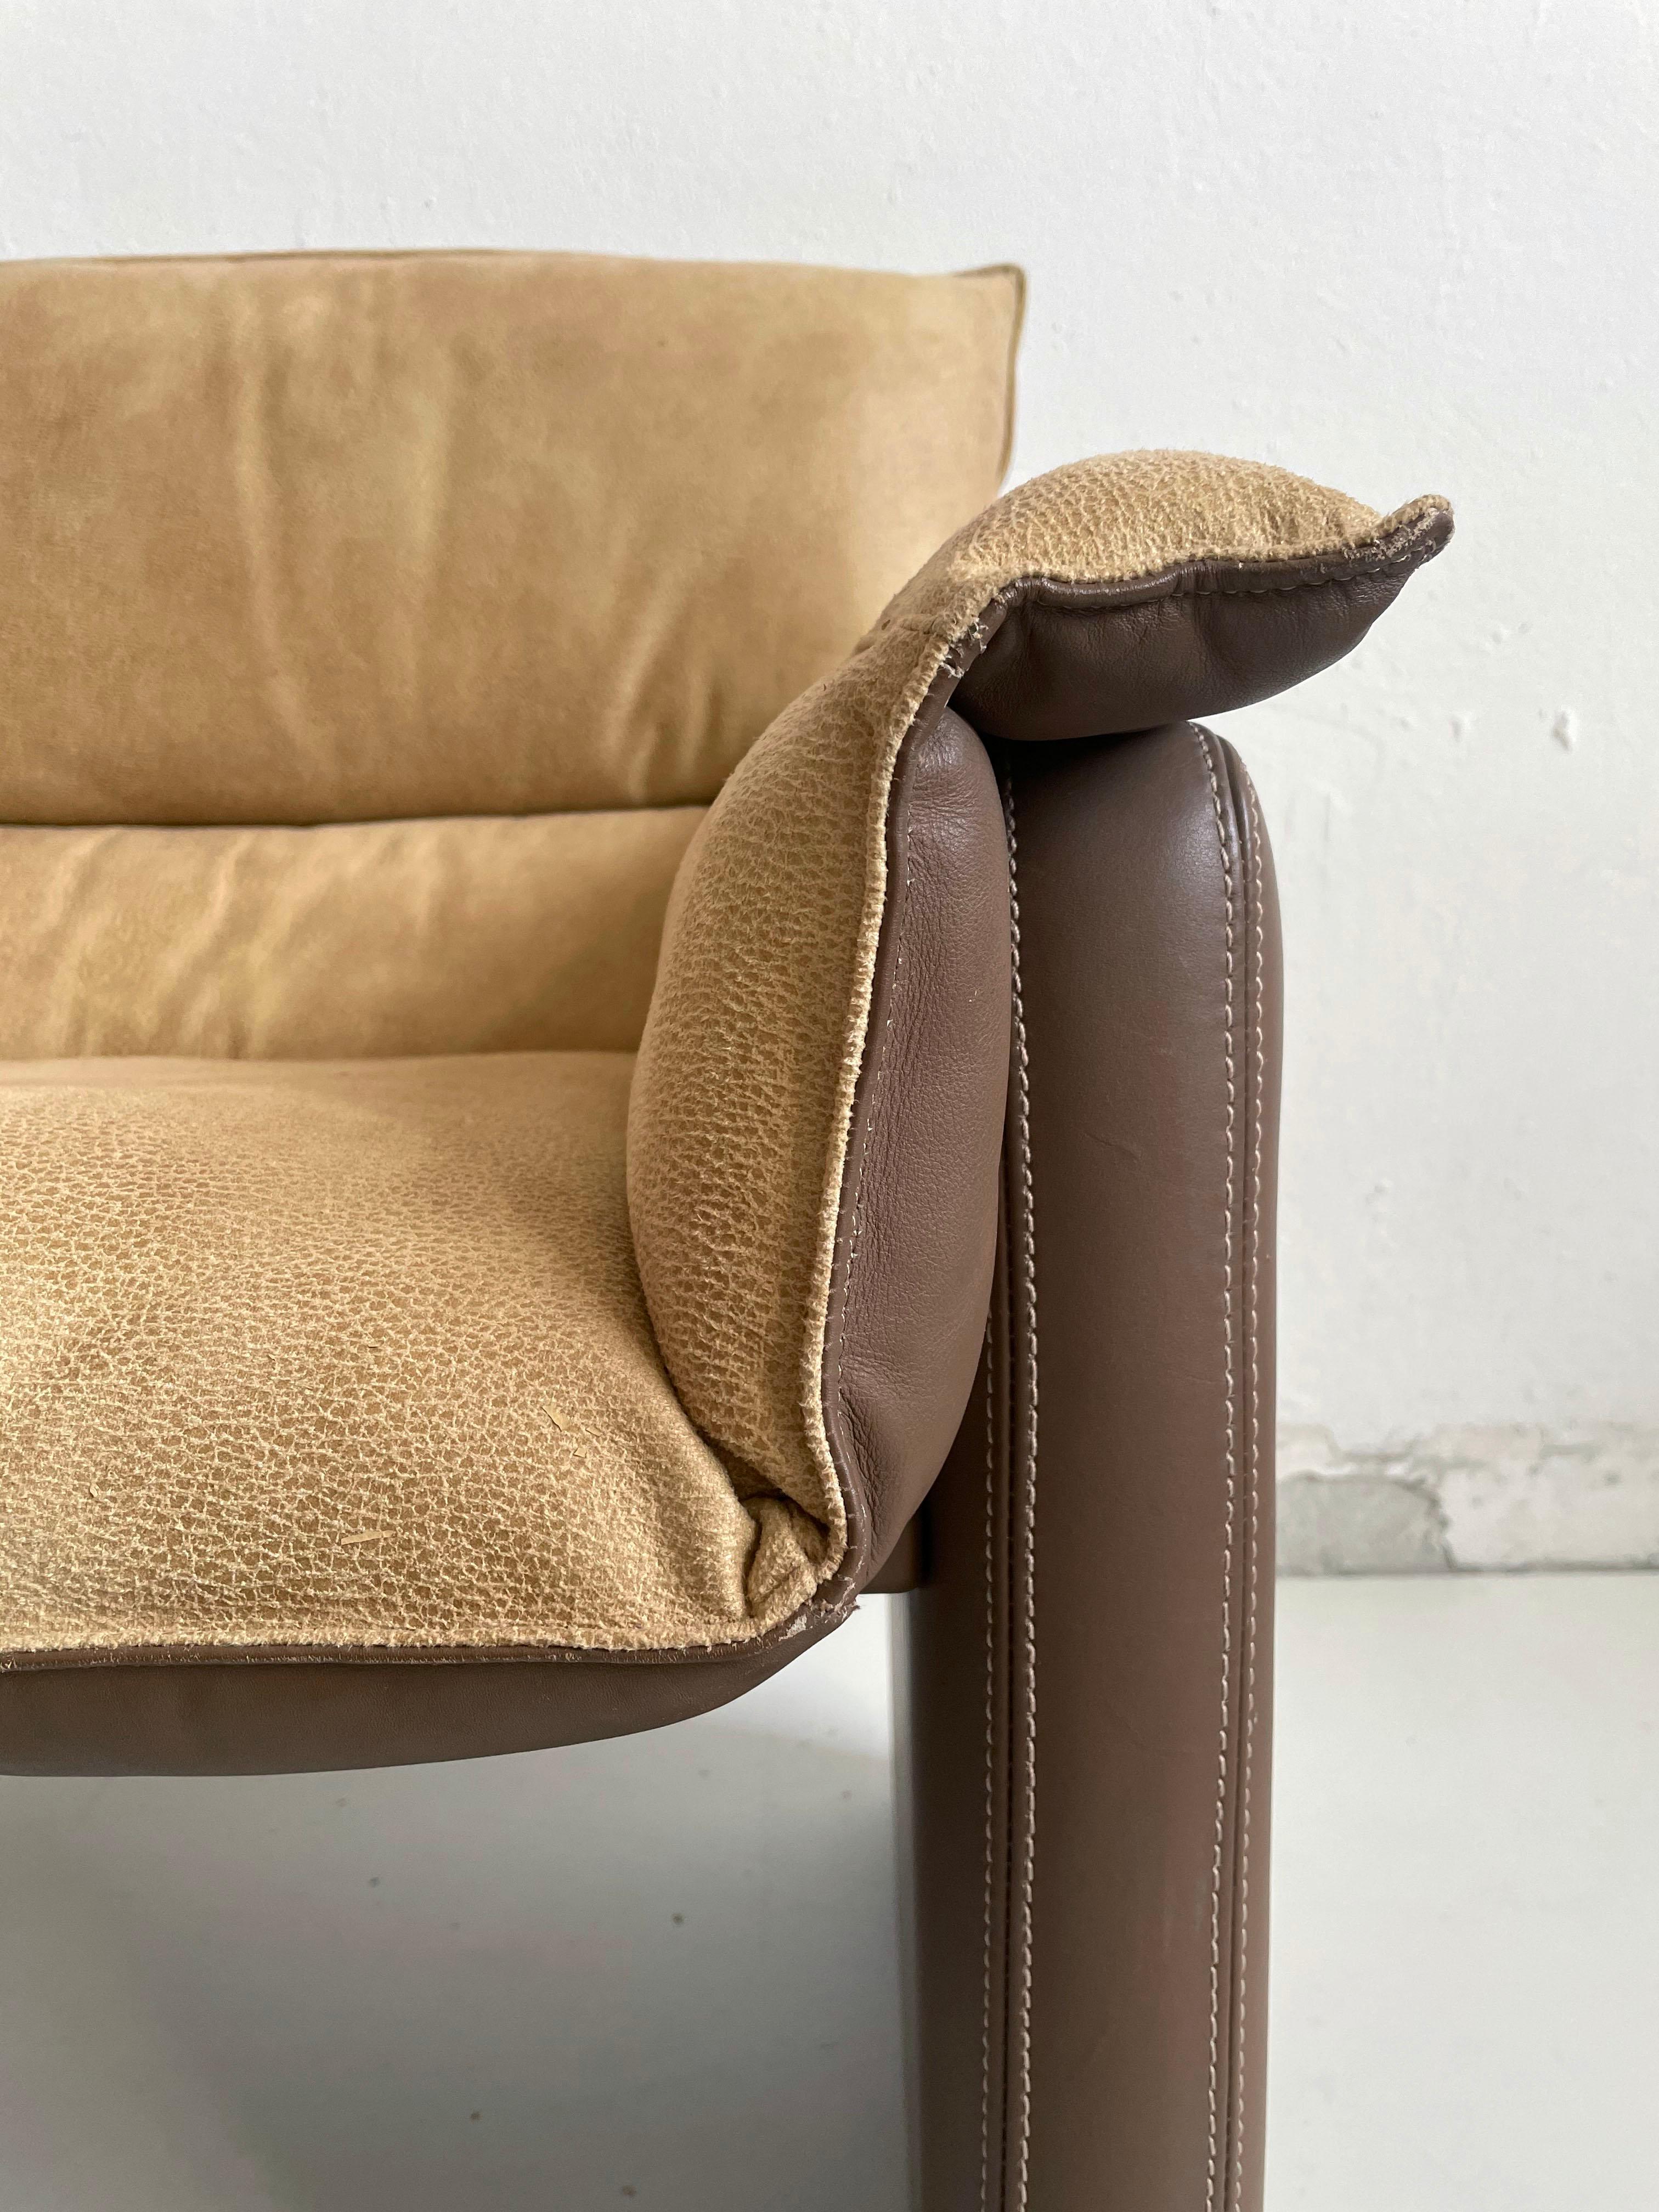 Chaise de table ou d'appoint vintage 'Safari' du système de meubles 'Bogo' conçu par l'architecte et designer italien Carlo Bartoli pour l'entreprise de meubles haut de gamme Rossi Di Albizzate.

Produit à la fin des années 1970 et dans les années